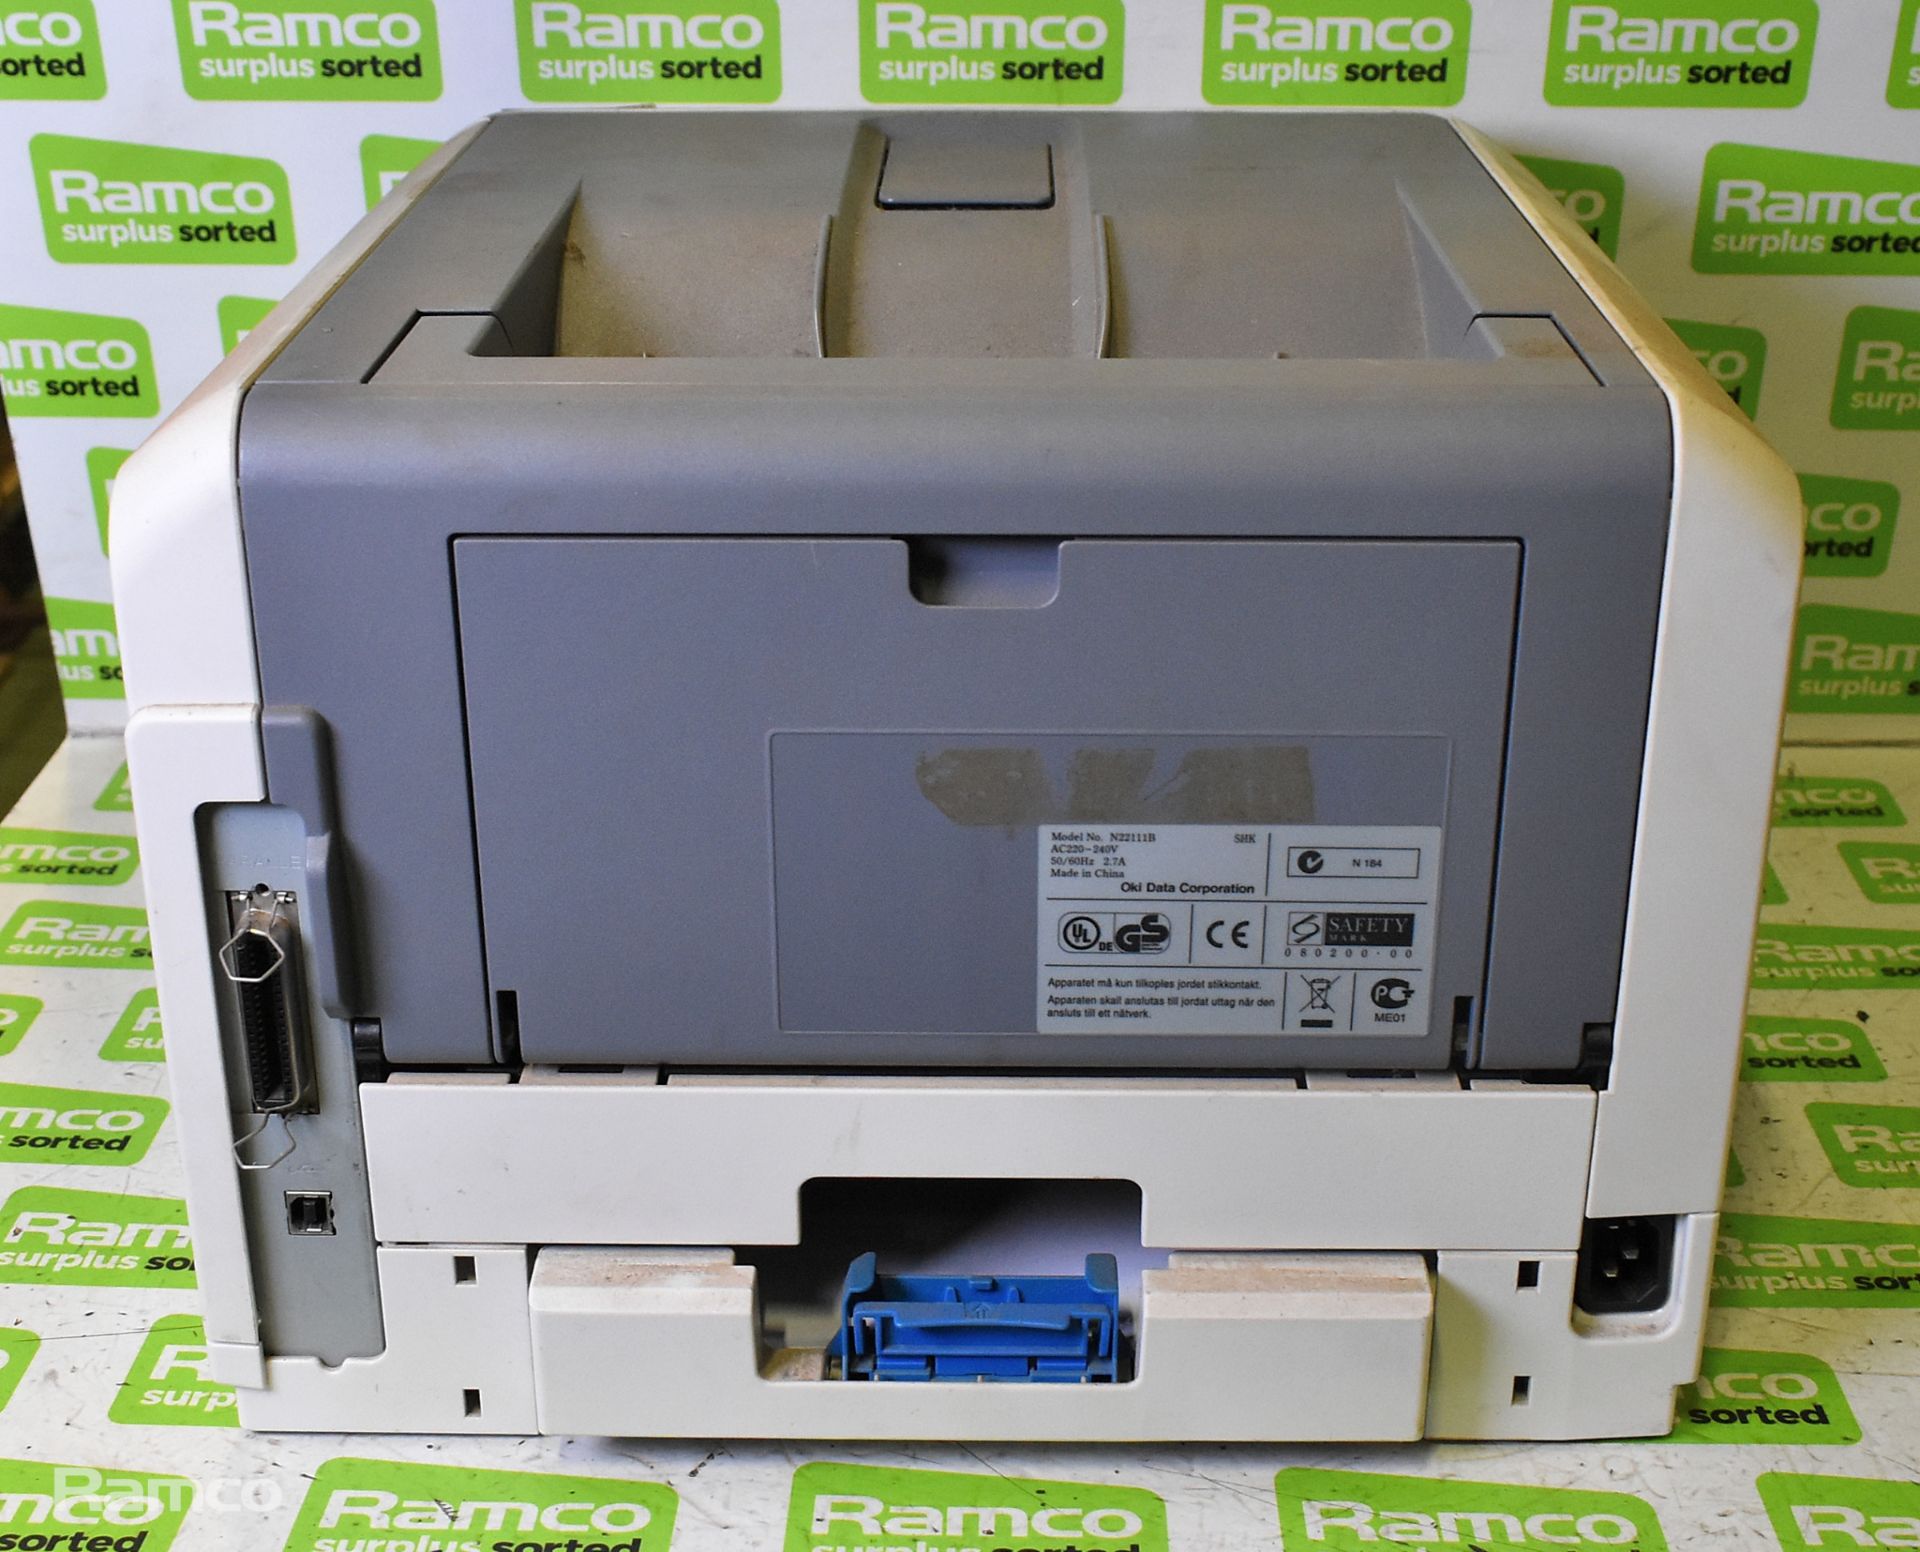 OKI B430d printer, Elmo EV-550 AFpal visual presenter - Image 14 of 15